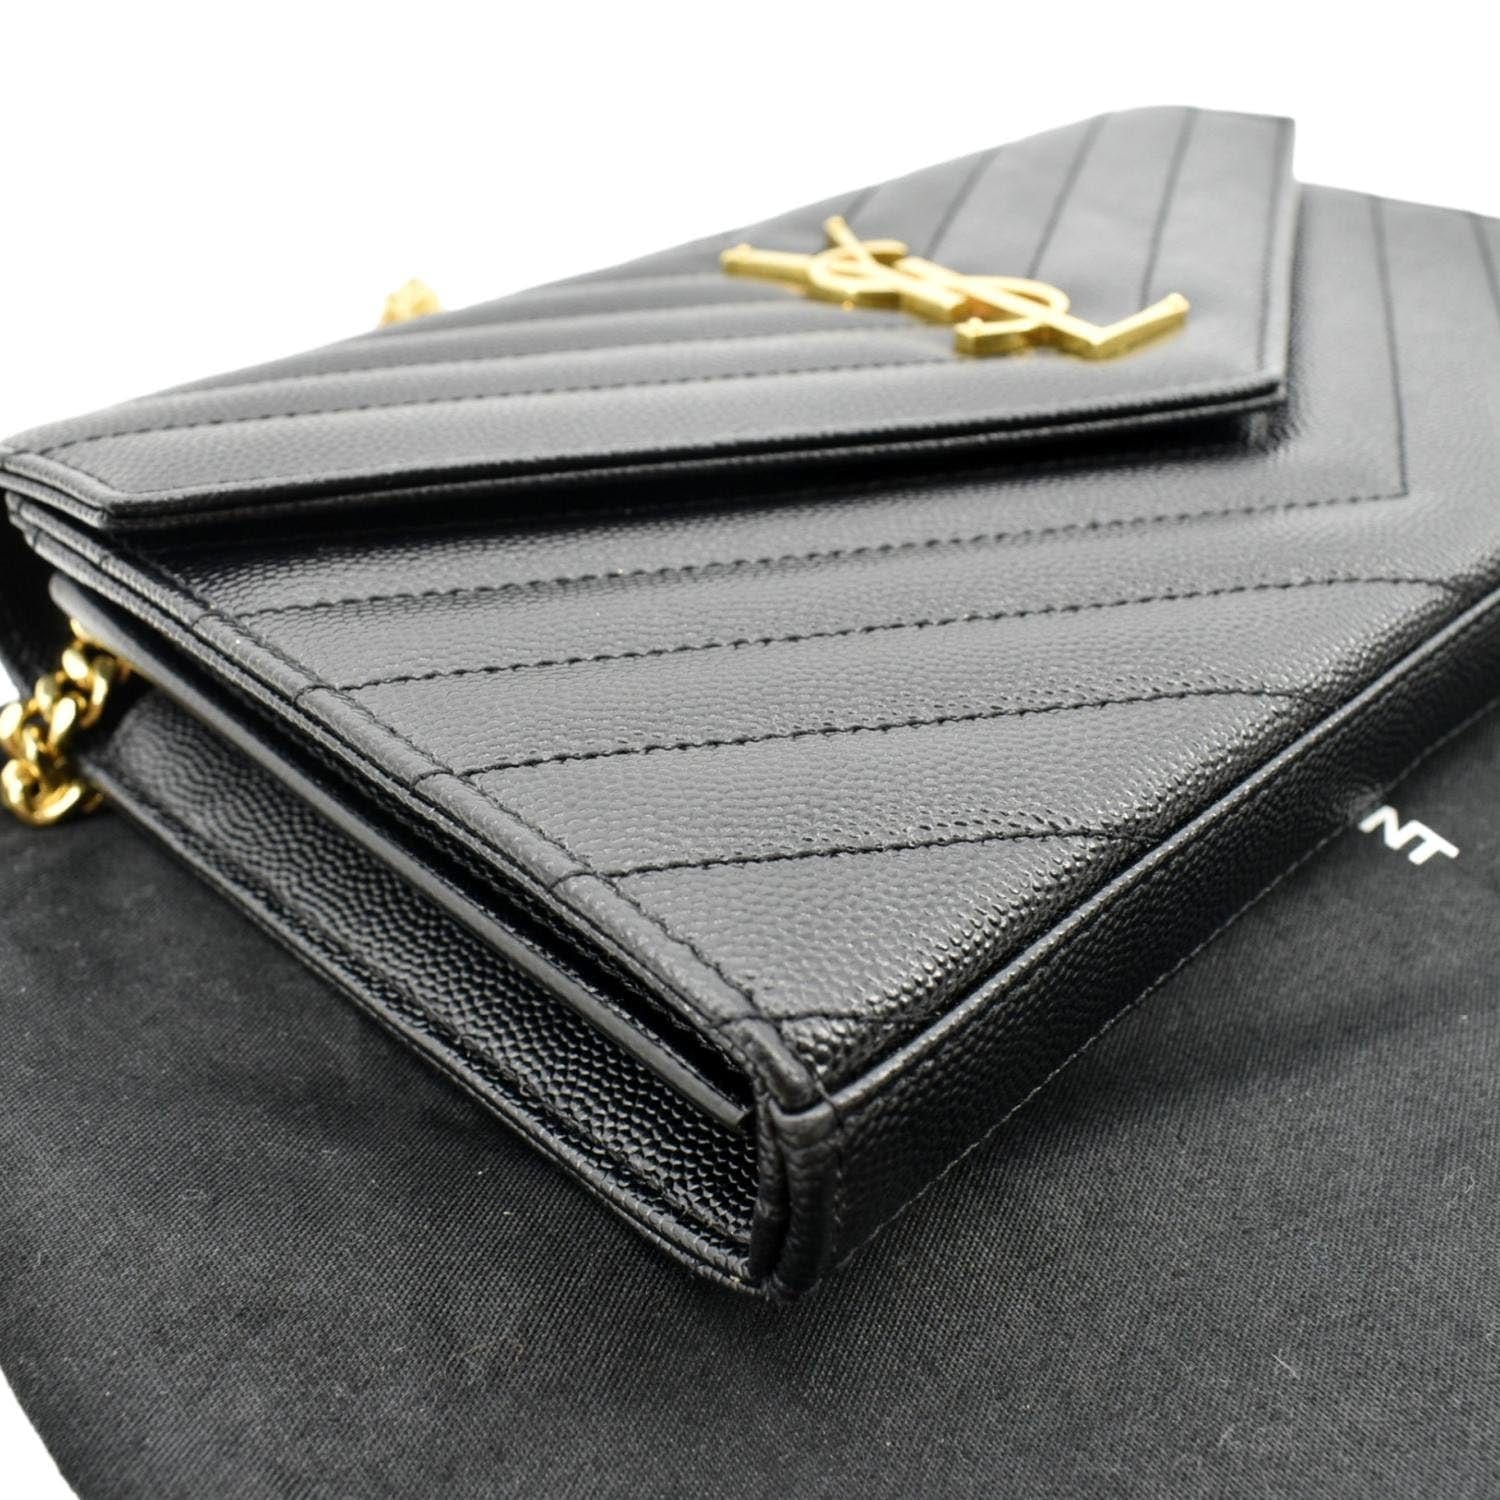 SAINT LAURENT PARIS Shoulder Bag 515822 Chain bag leather Black Silver – JP- BRANDS.com